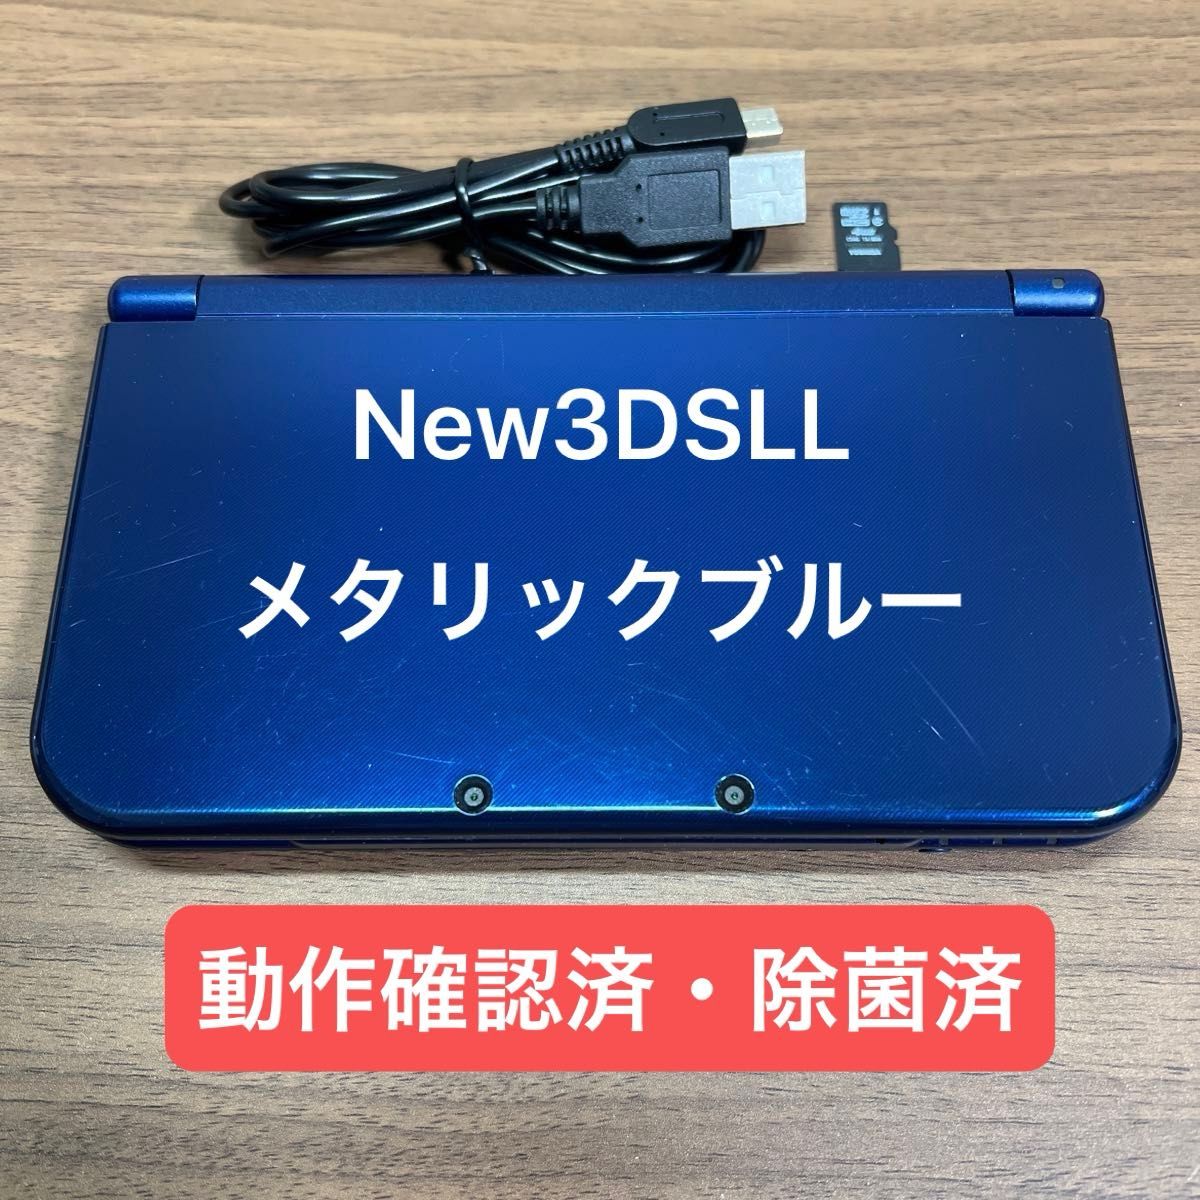 ★動作確認済★ New ニンテンドー 3DSLL メタリックブルー USB充電ケーブル付